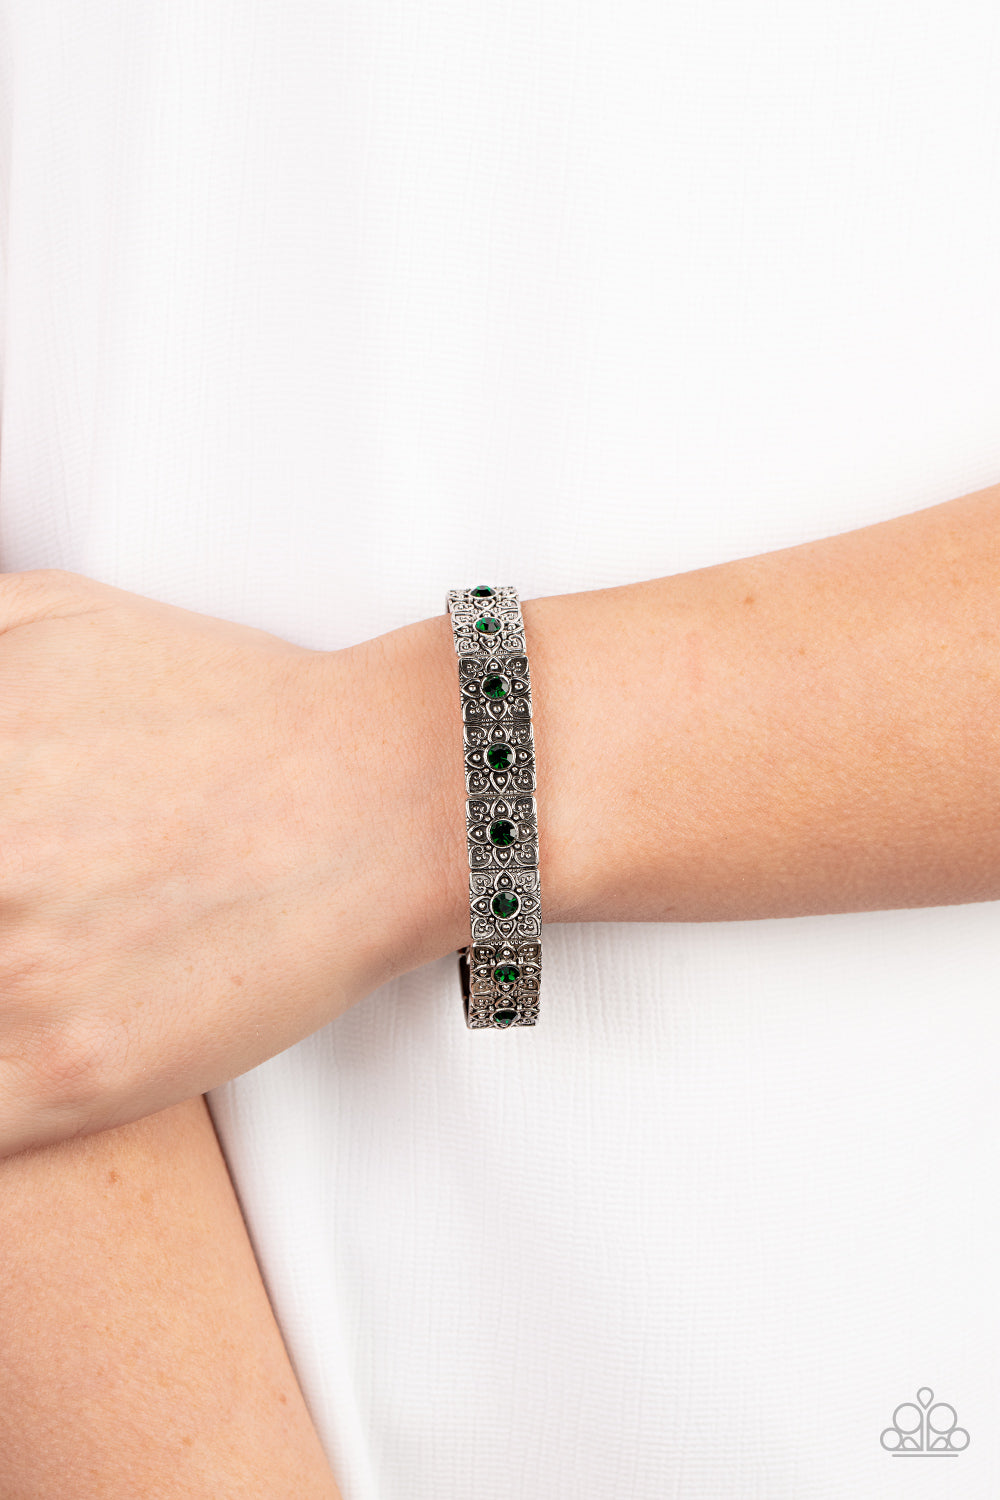 Paparazzi Venetian Valentine - Green - Bracelet - $5 Jewelry with Ashley Swint